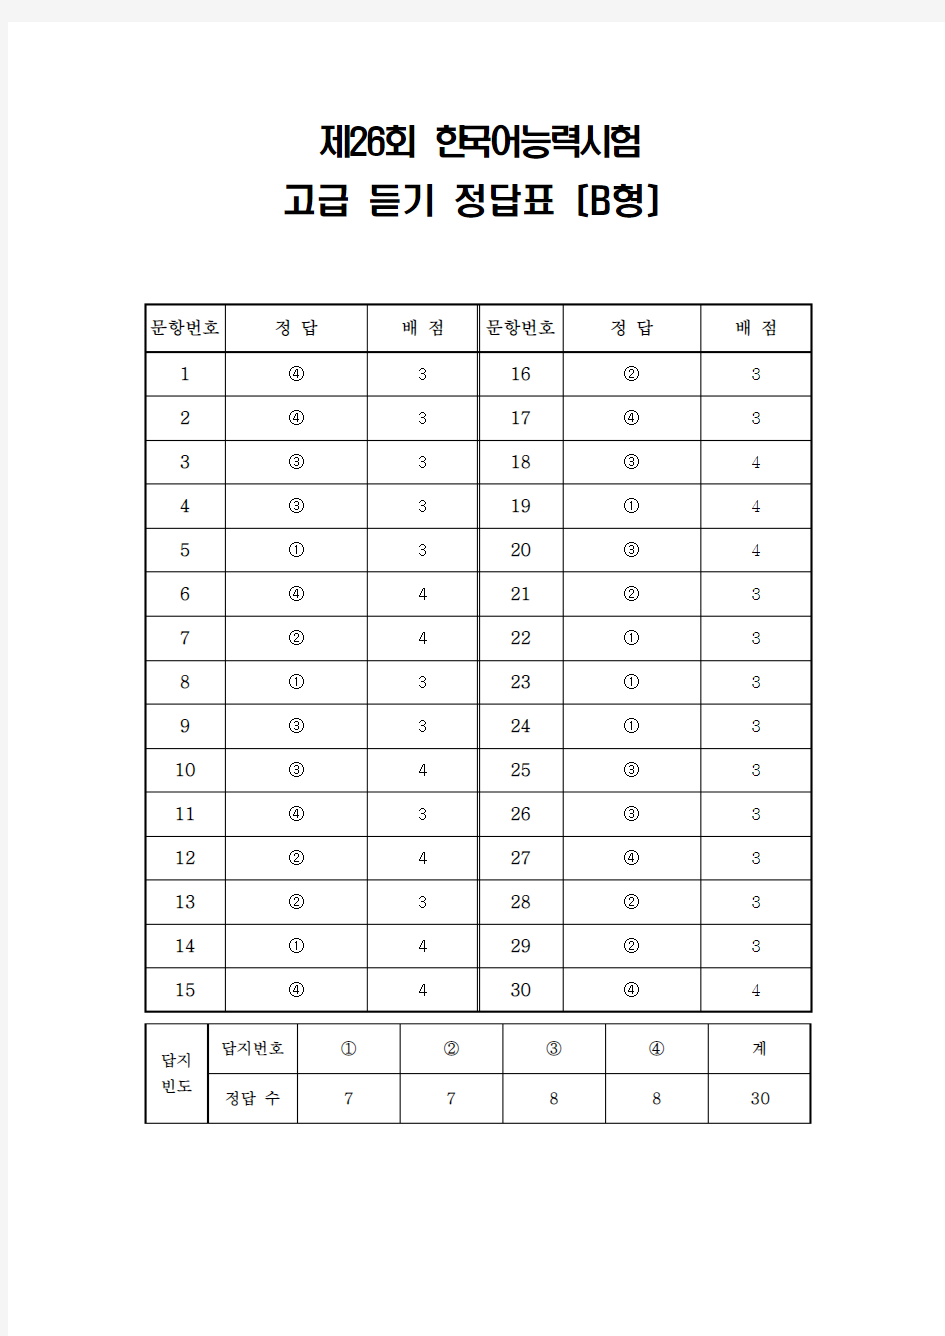 韩国语能力考试(TOPIK)真题资料【26】26届-高级-听力-答案